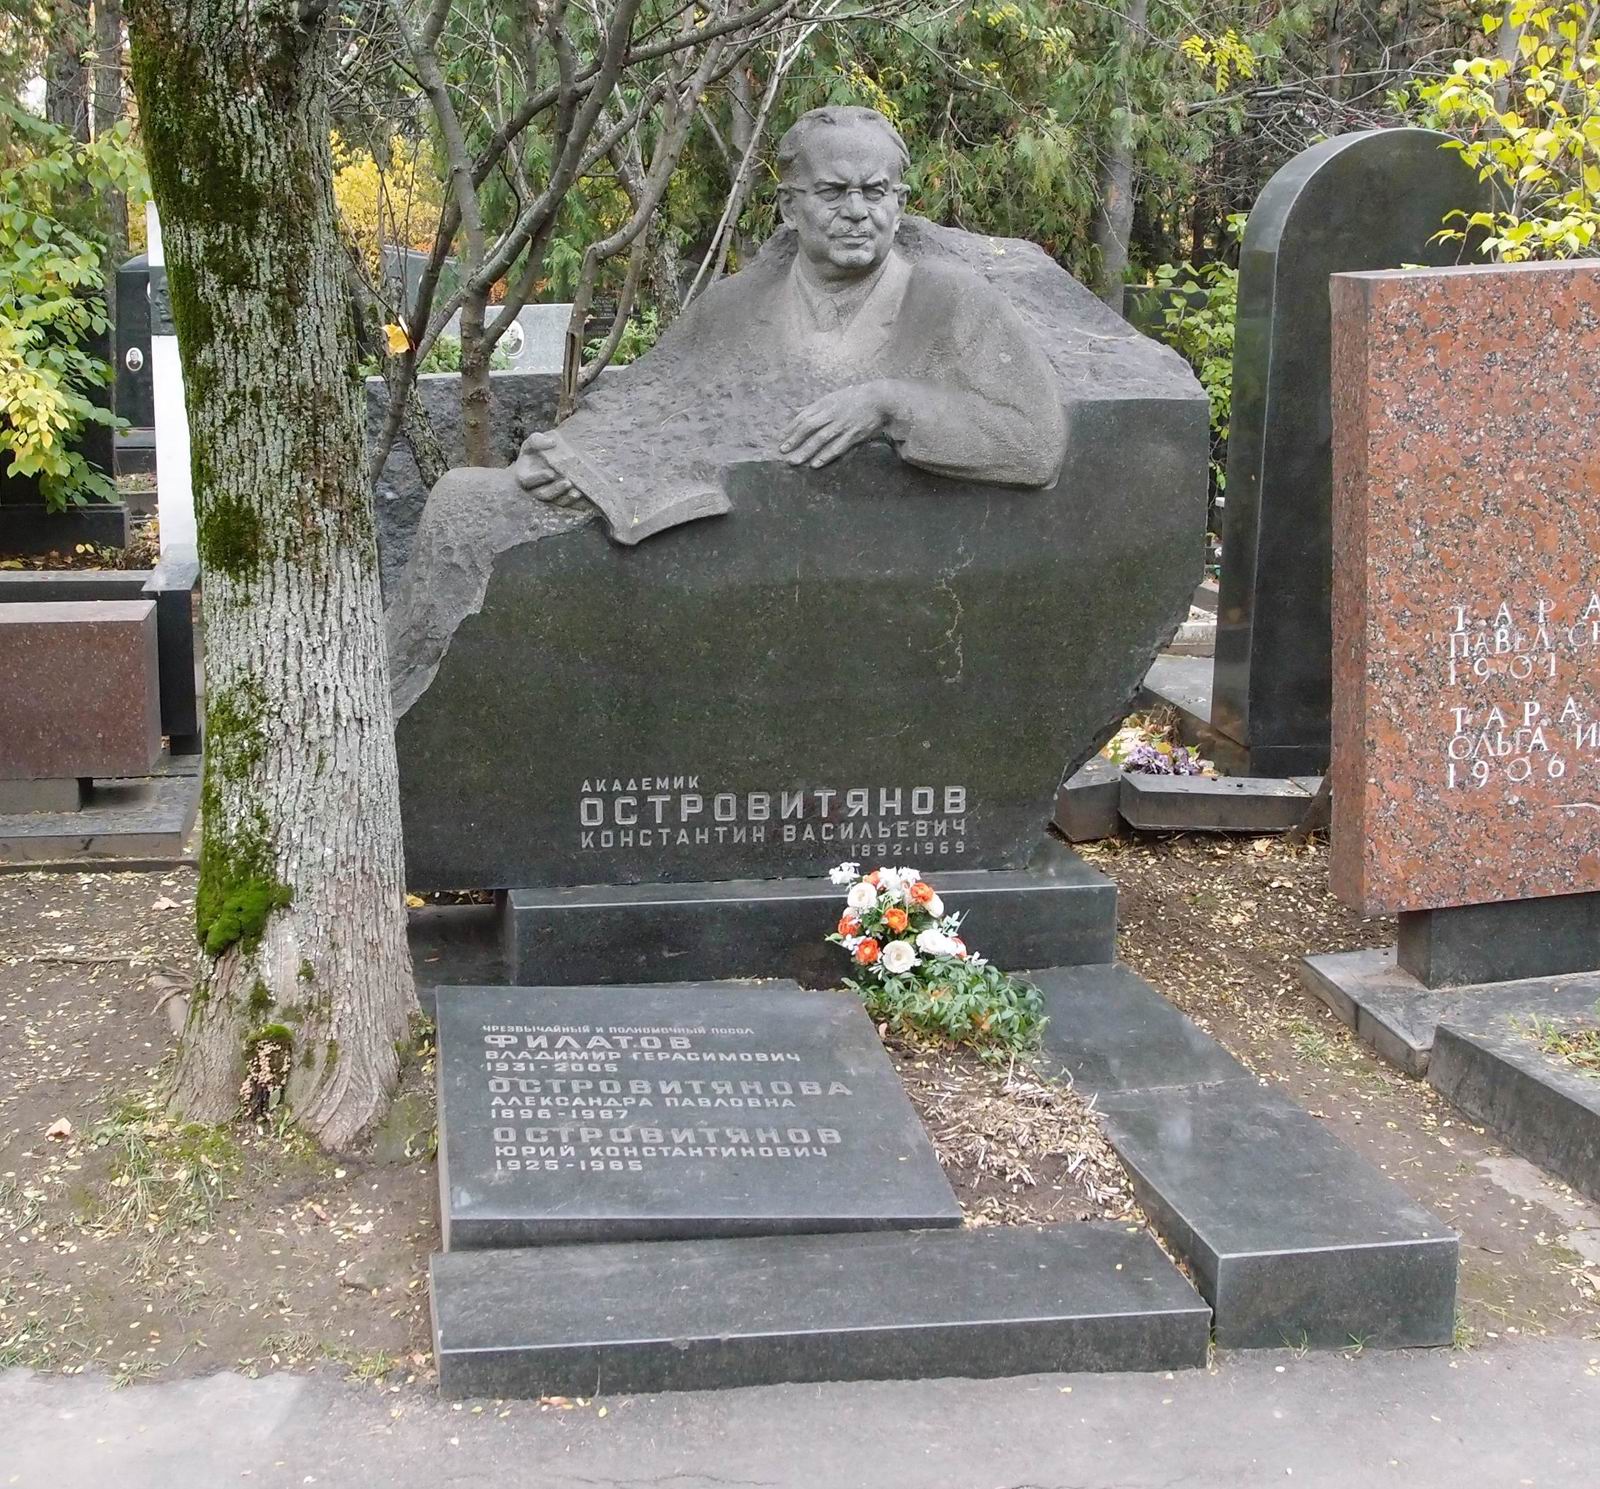 Памятник на могиле Островитянова К.В. (1892-1969), ск. З.Виленский, арх. М.Виленская, на Новодевичьем кладбище (6-22-8).